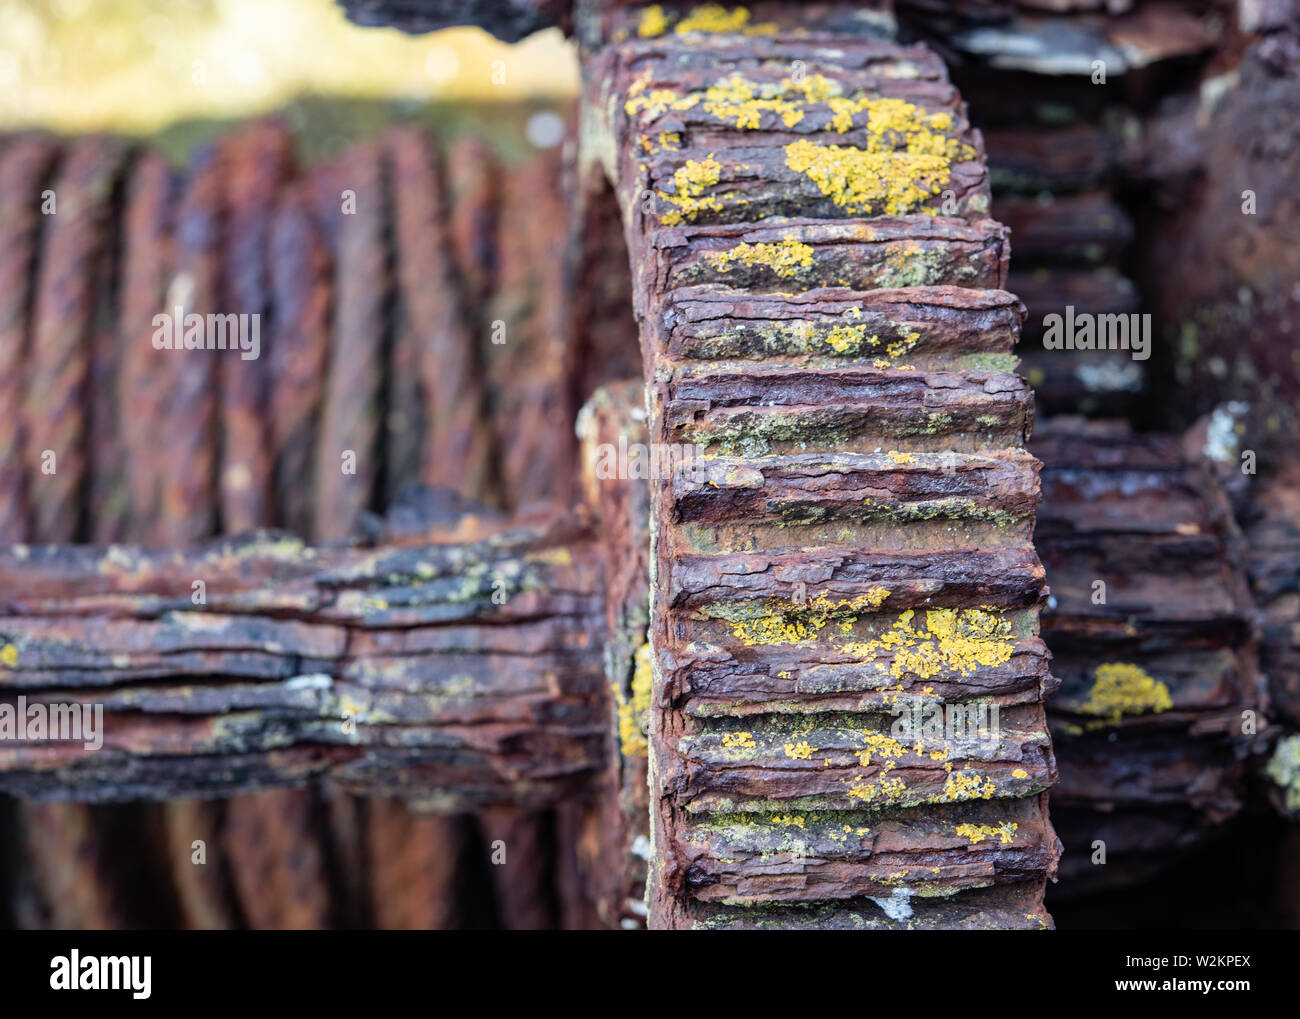 Alte rosten Mooring winch Rädchen in Moos bedeckt Stockfoto